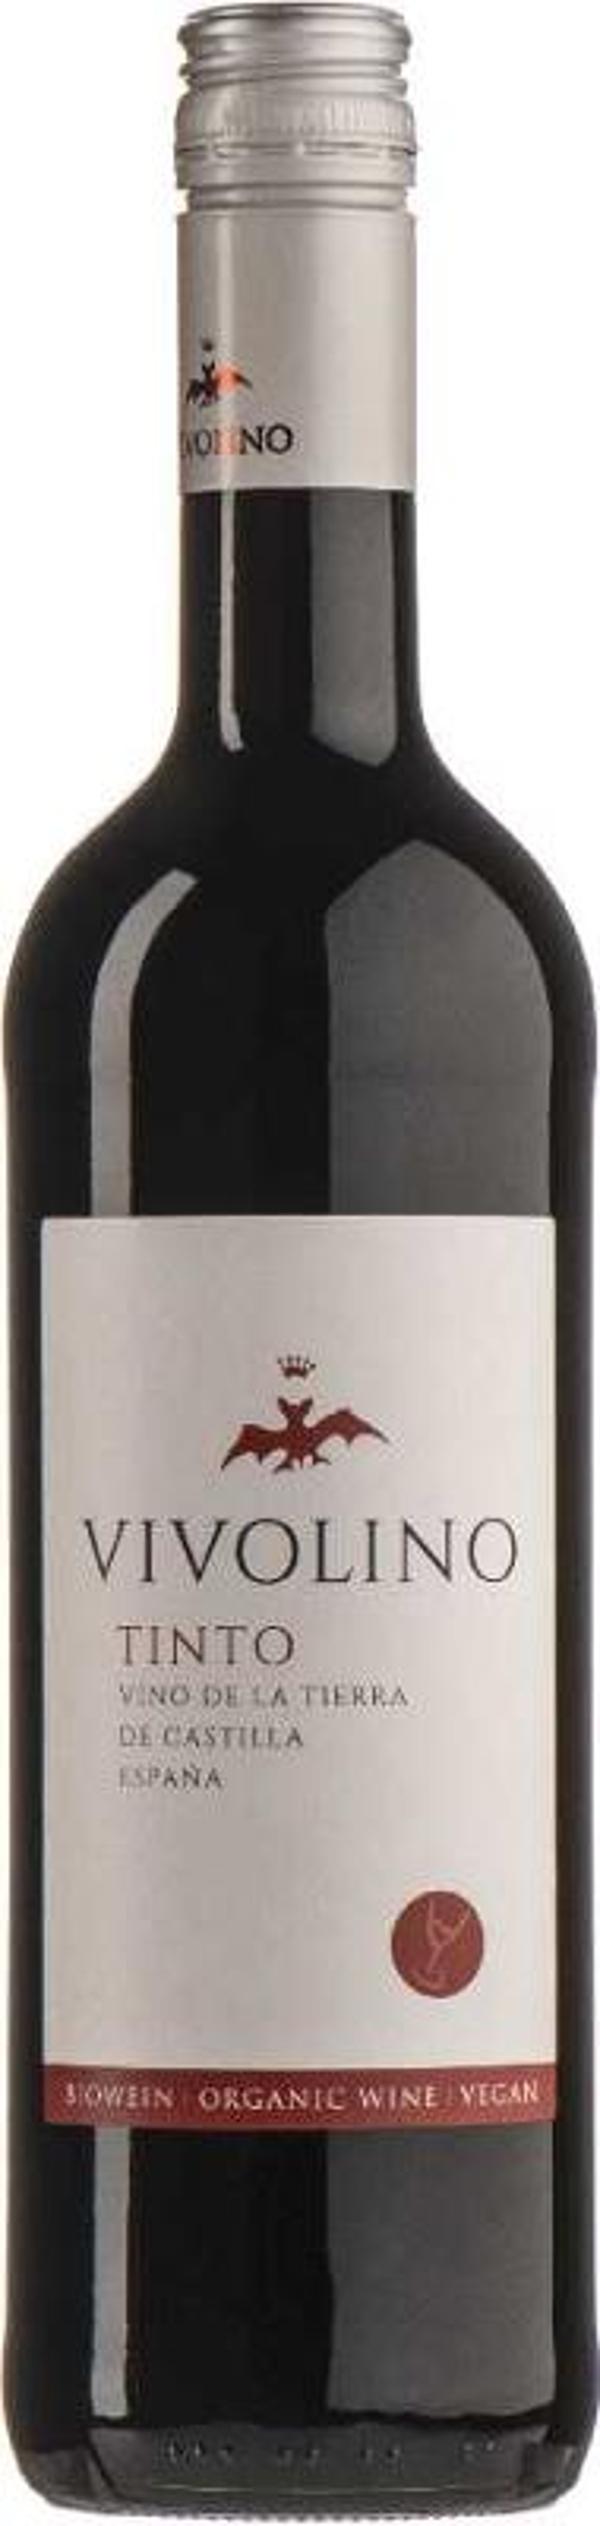 Produktfoto zu VivoLino Rotwein